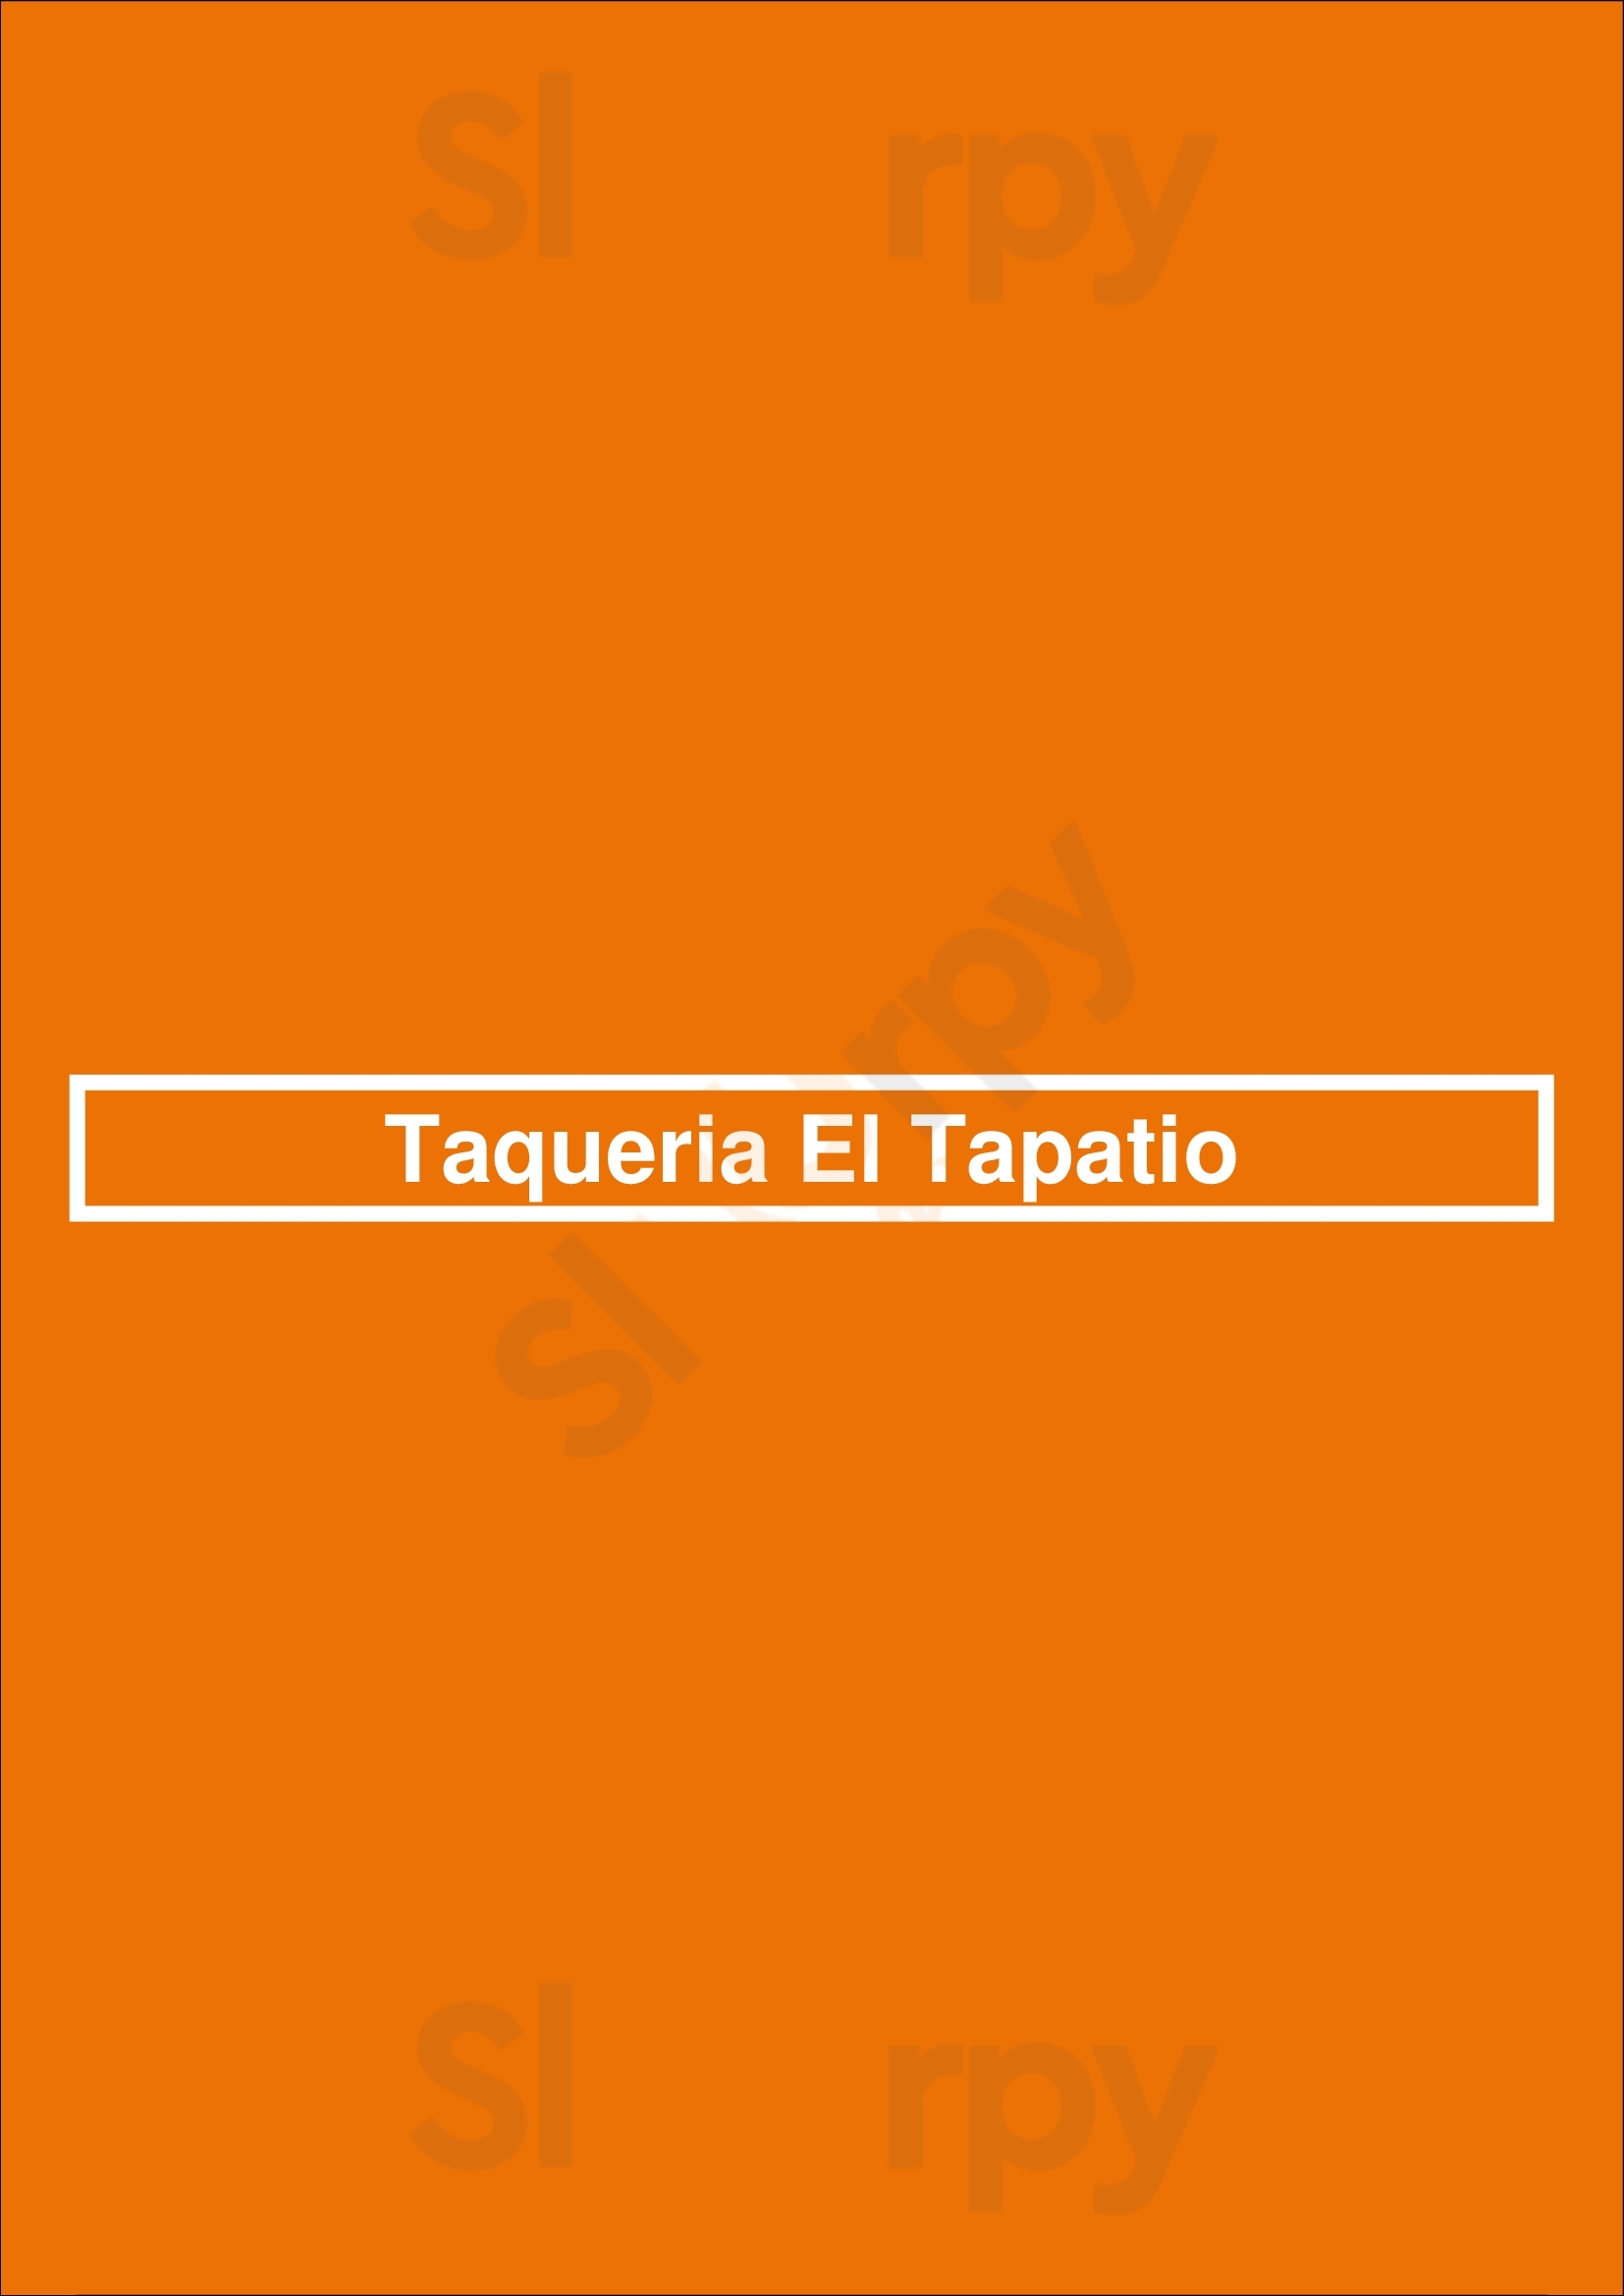 Taqueria El Tapatio Burbank Menu - 1